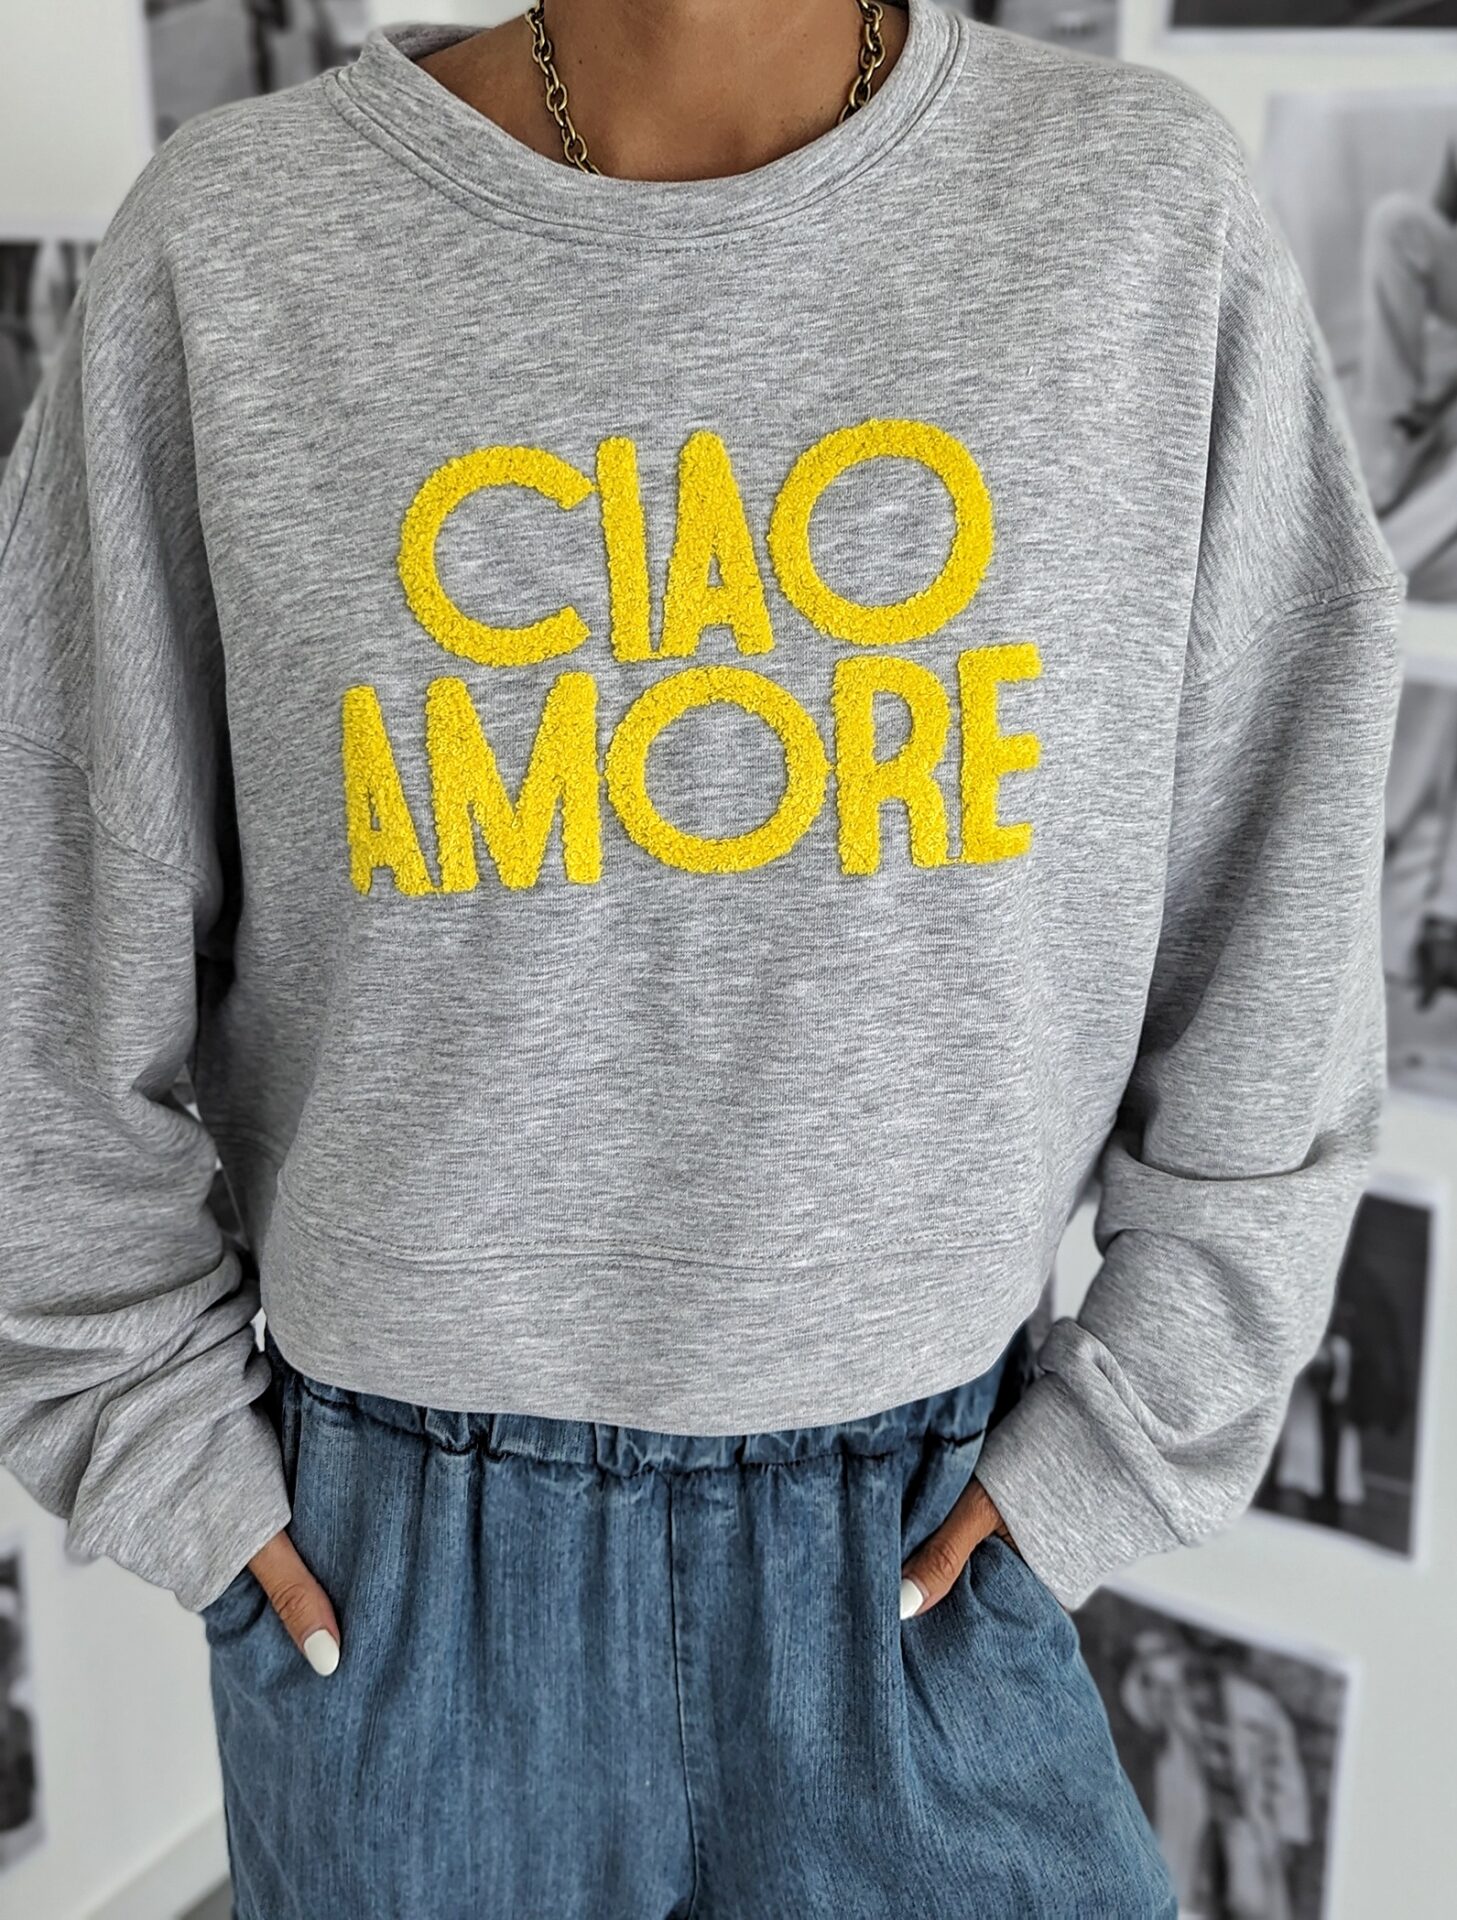 leichter Sweater – CIAO AMORE- versch. Farben